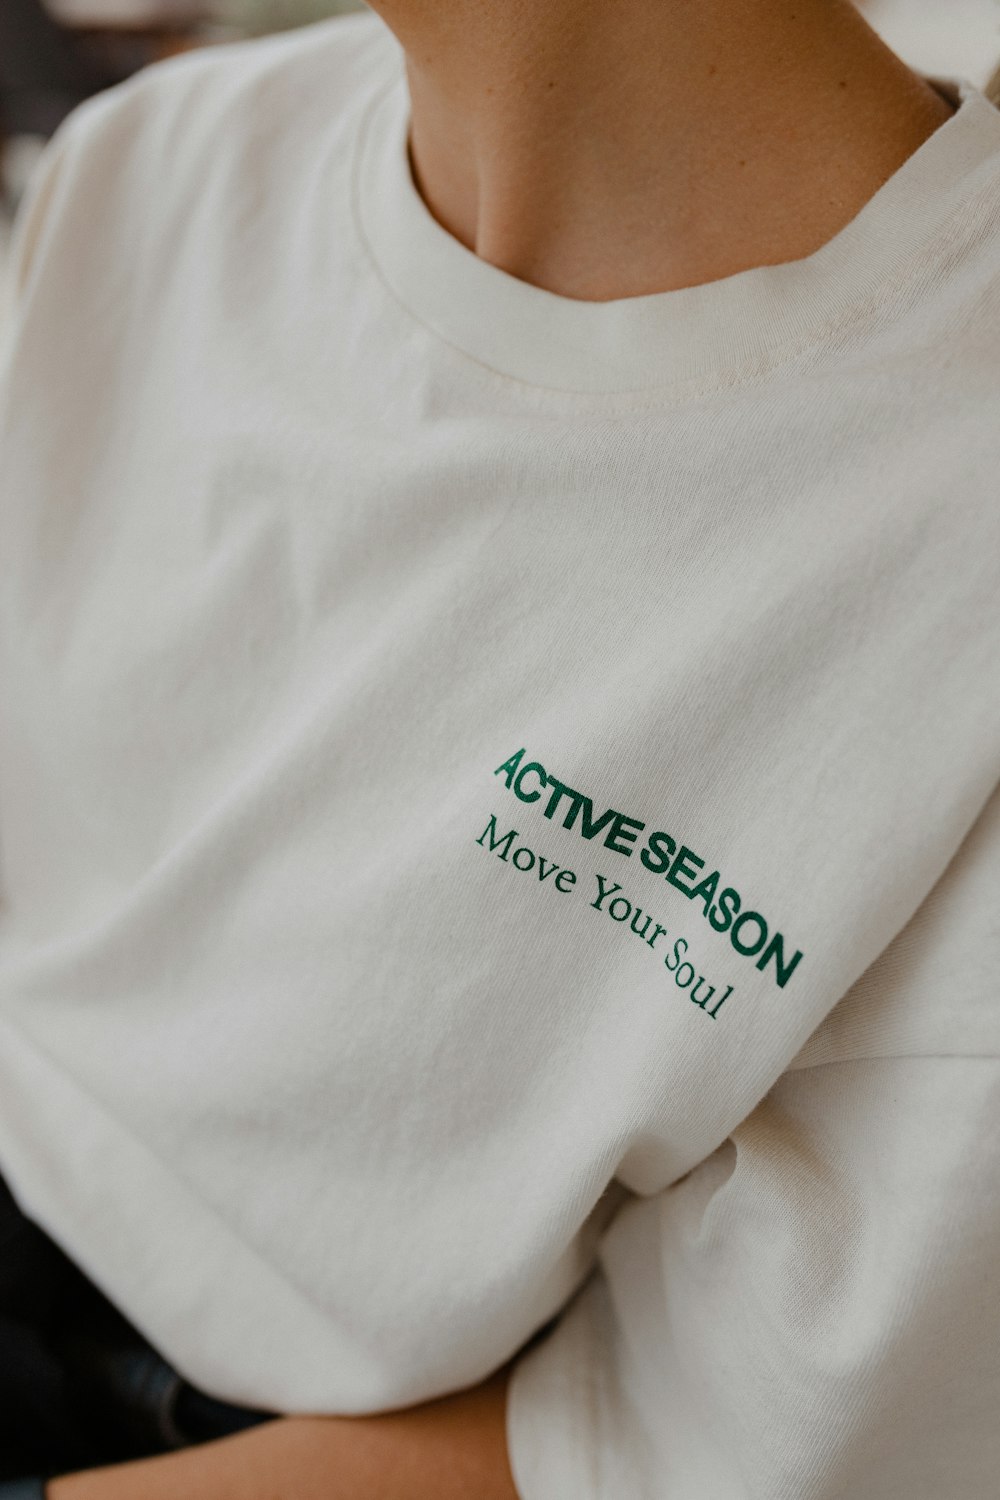 uma pessoa vestindo uma camisa branca com texto verde nela